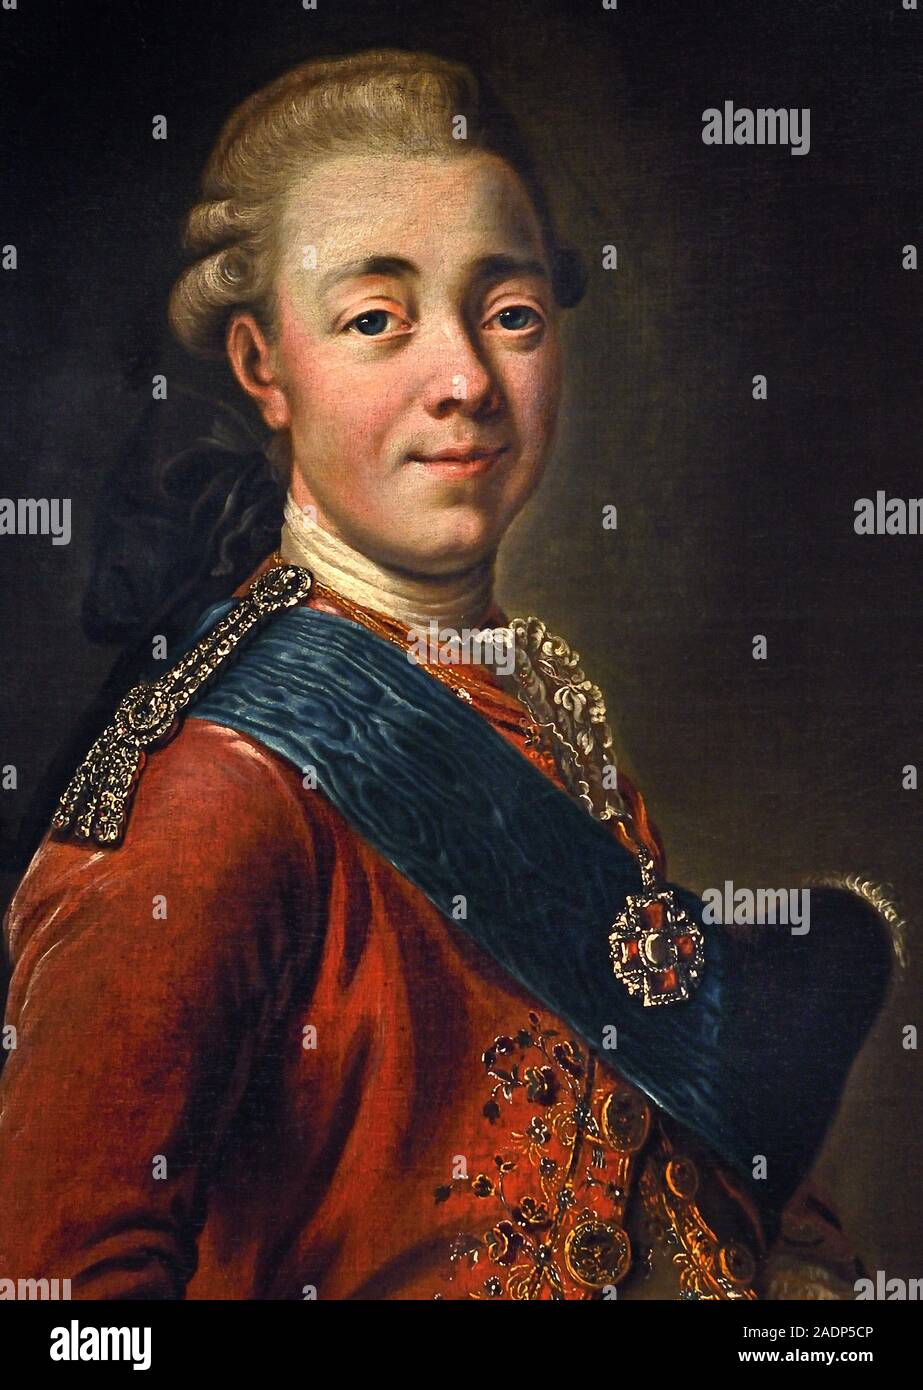 Portrait du Grand-duc Pavel Petrovitch (1754-1801), 1776. Artiste : Alexander Roslin, (1718-1793) -, joyaux de la cour impériale russe, 18e-19e siècle, la Russie. ( Futur Tsar Paul I 1765-95 ) Banque D'Images